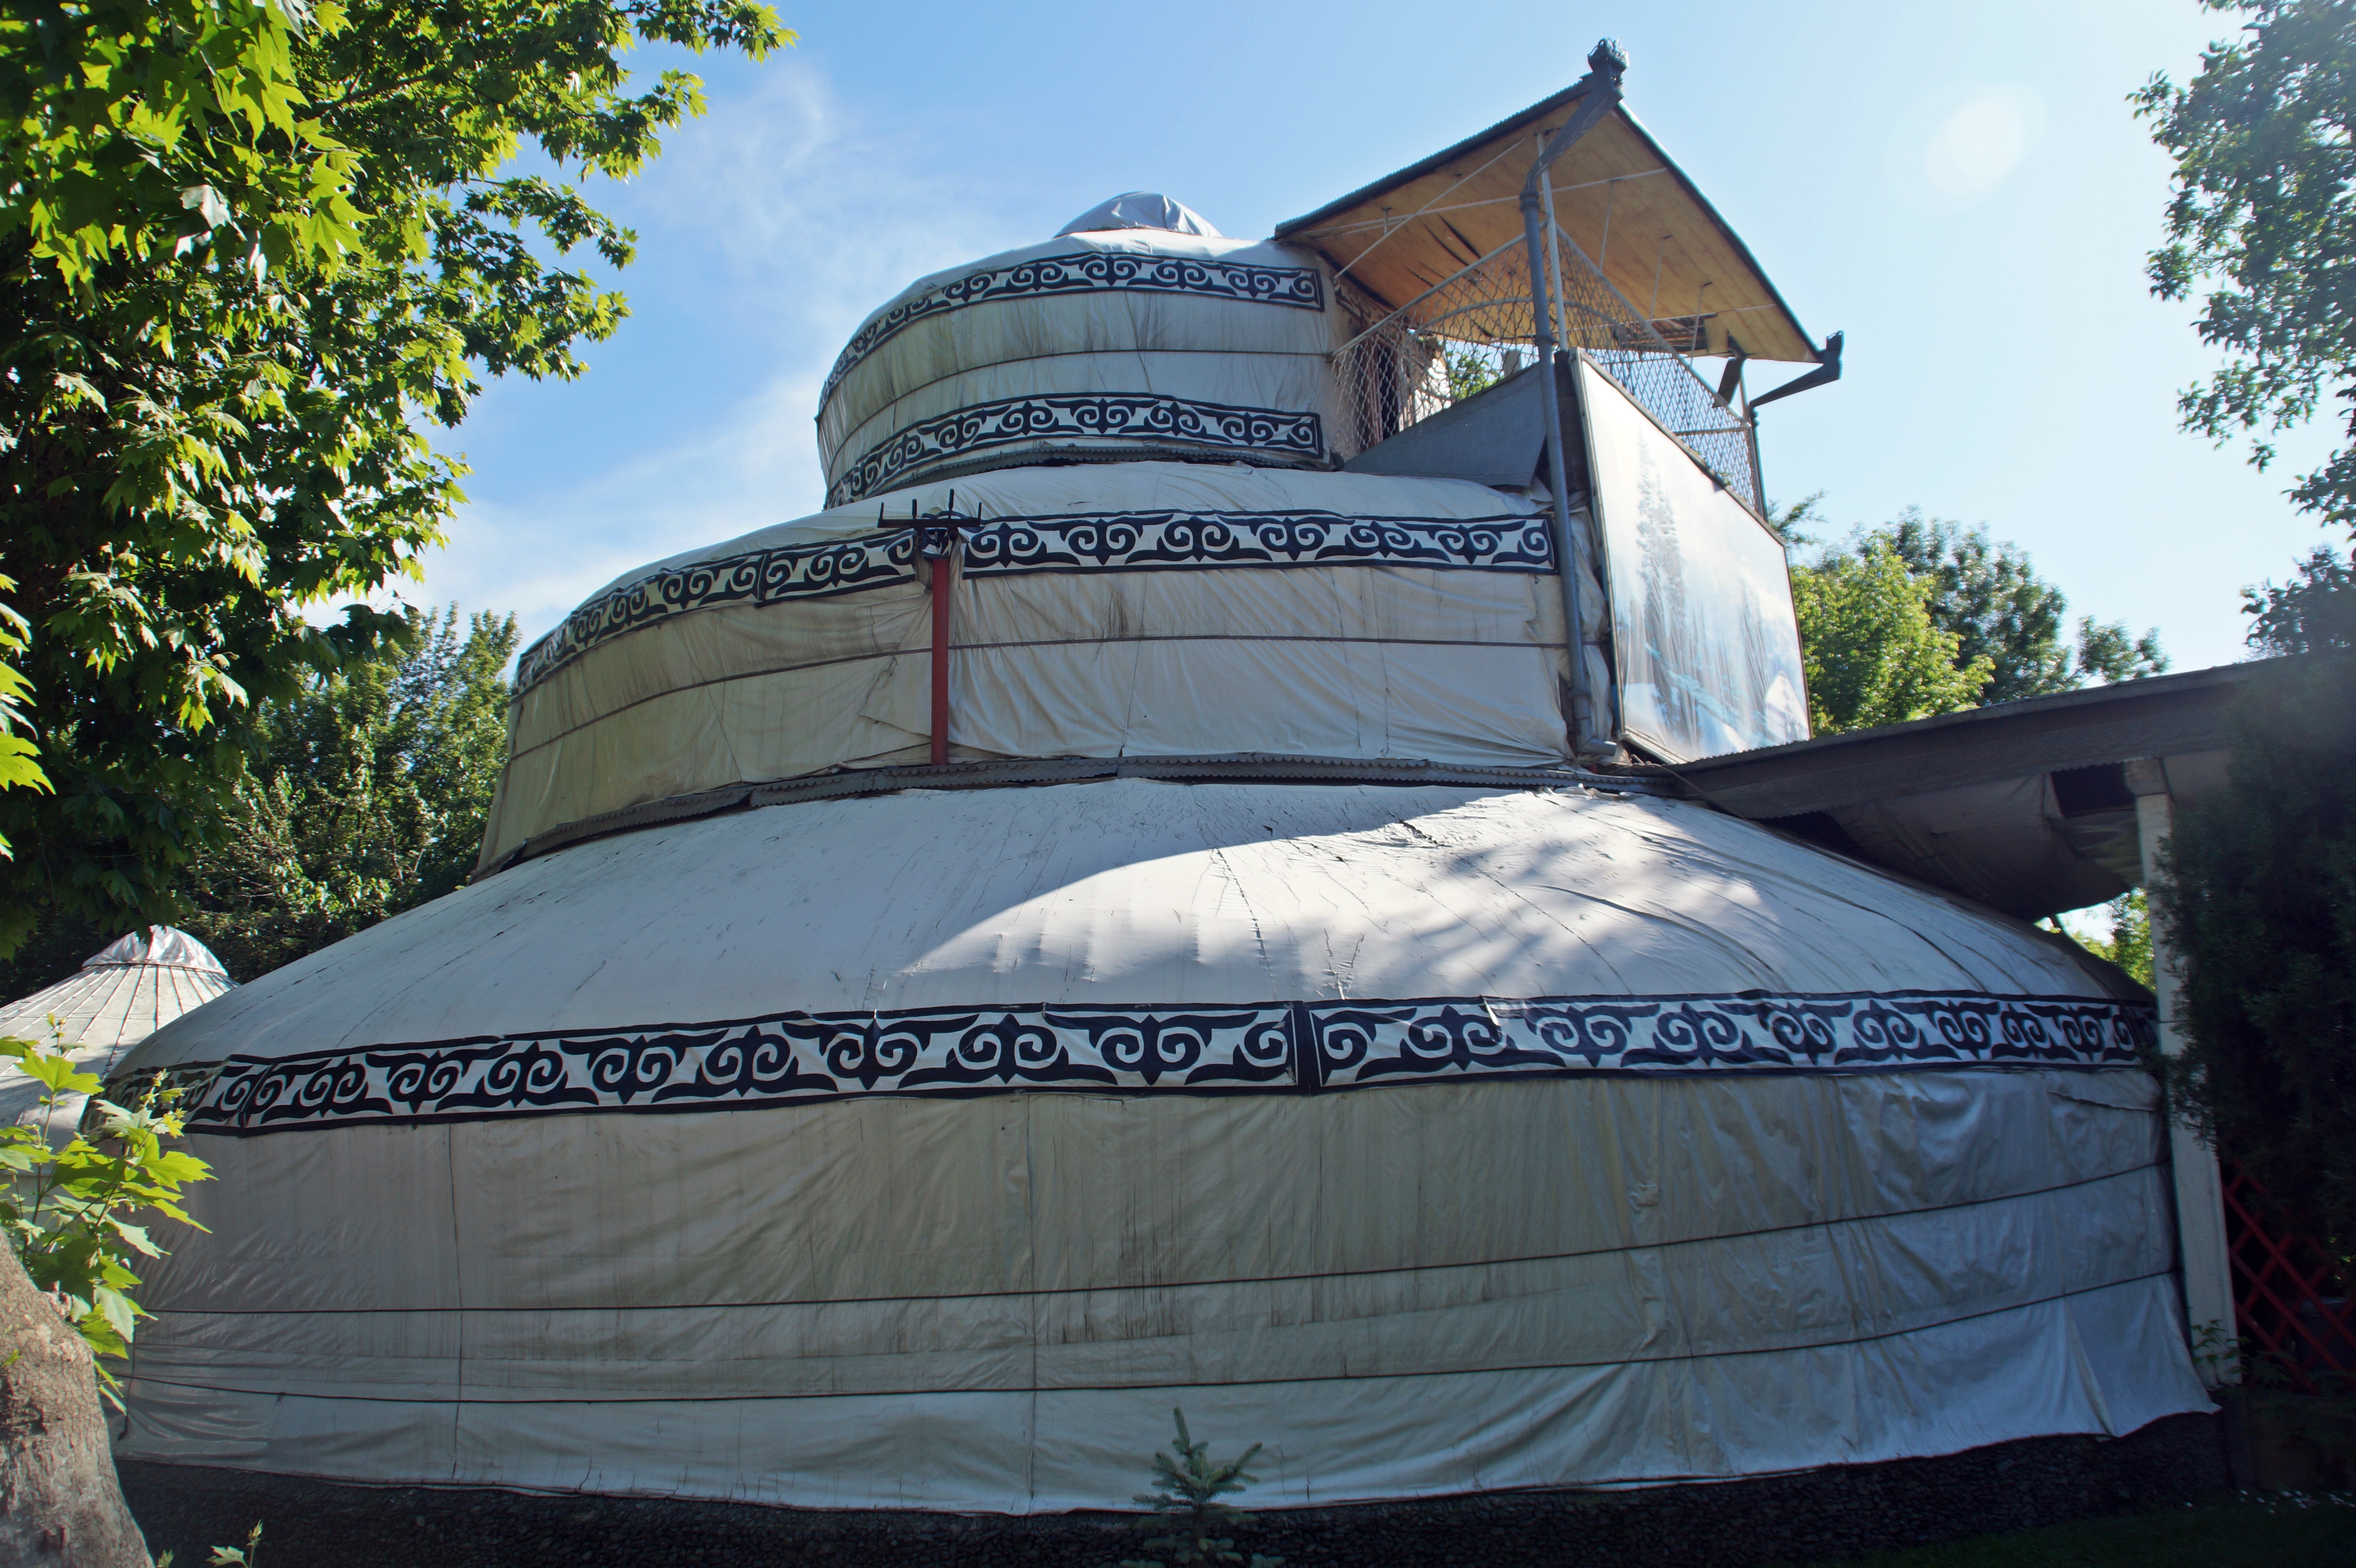 The 3-story yurt